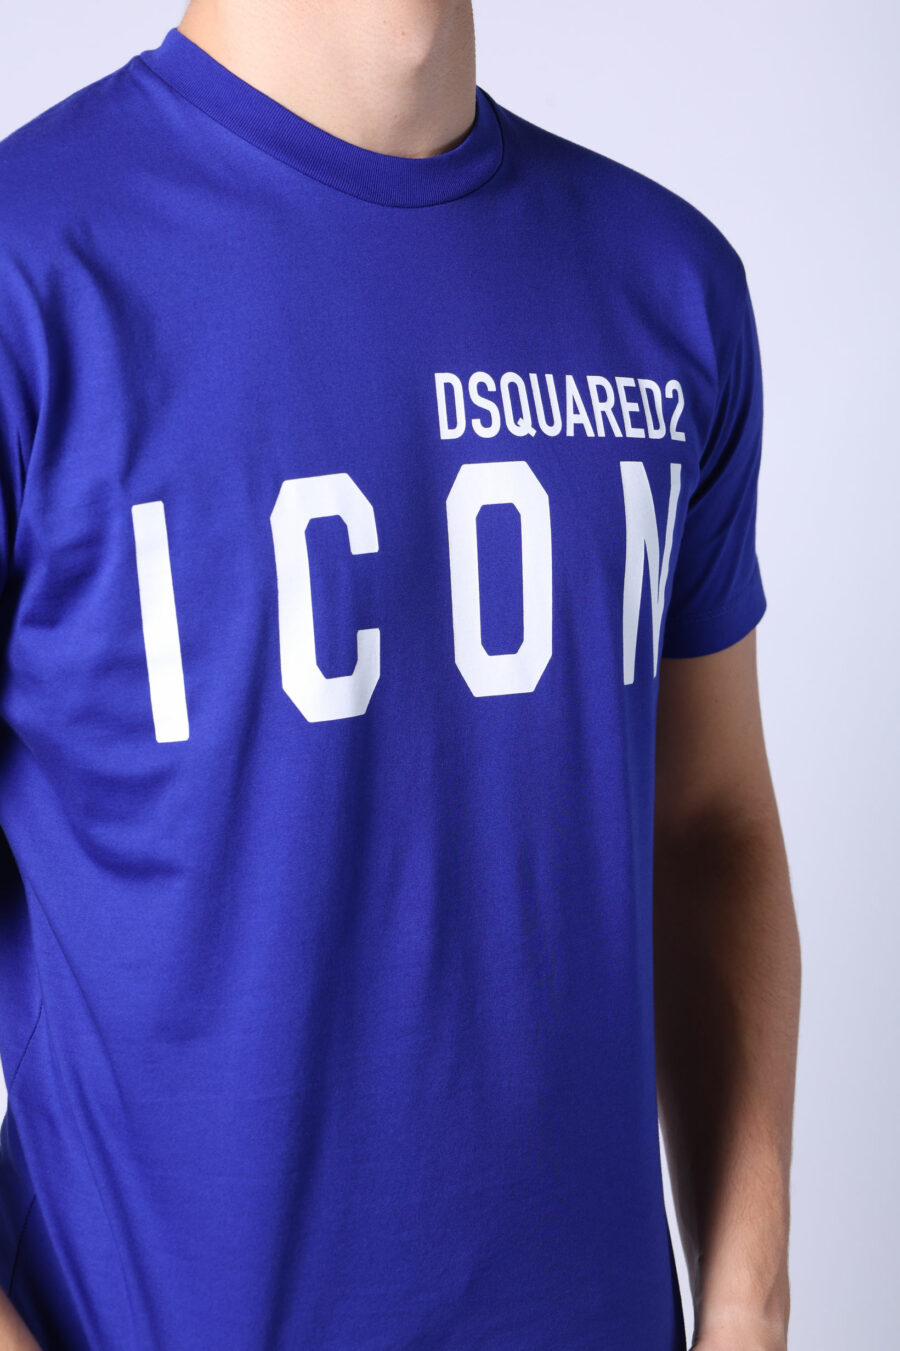 Elektrisch blaues T-Shirt mit weißem "Icon" Maxilogo - Untitled Catalog 05400